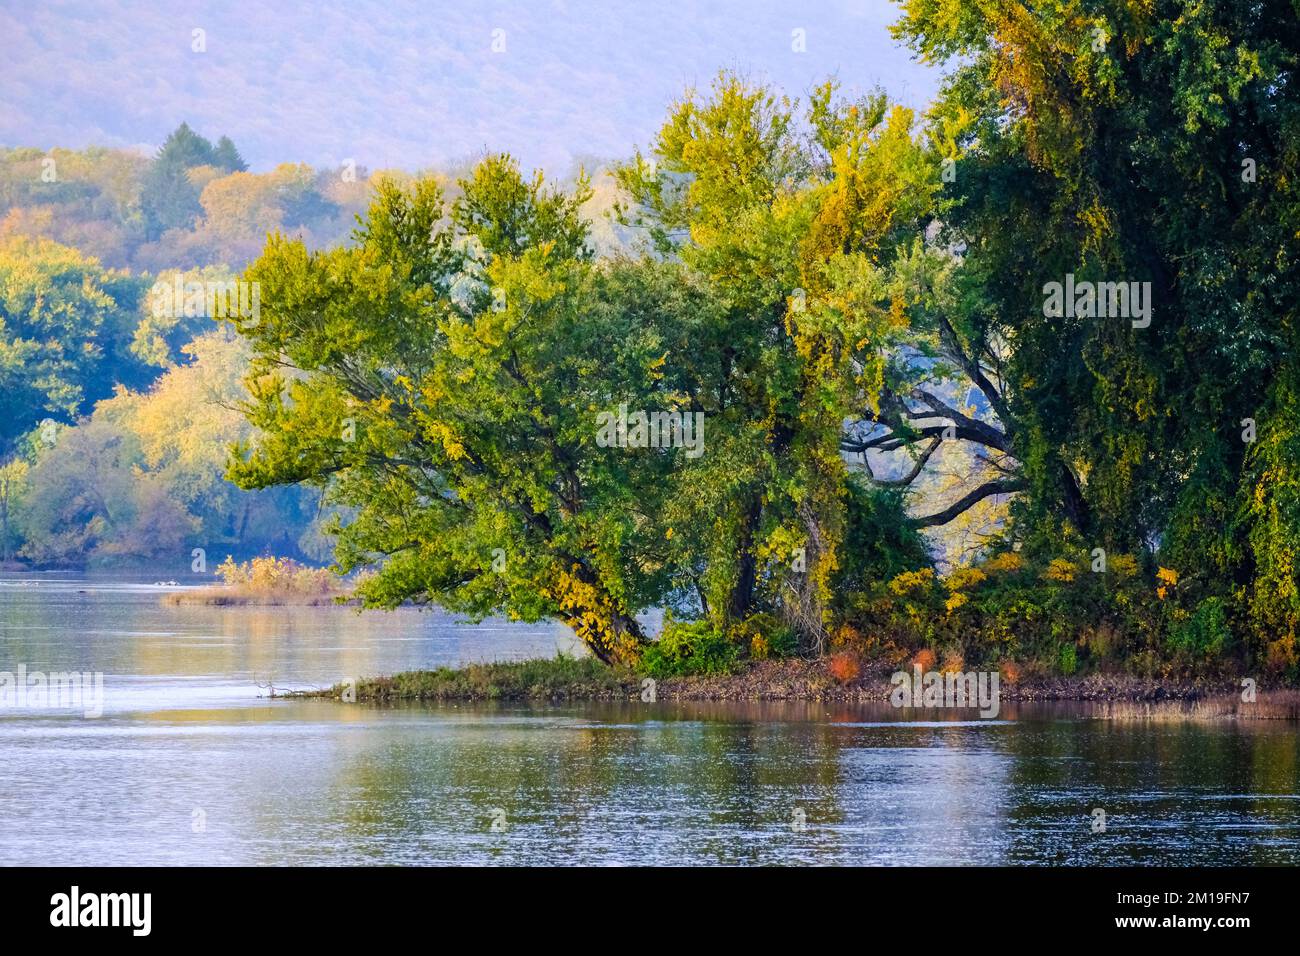 Automne sur la rivière Susquehanna, vallée de la rivière Susquehanna, près de Dauphin, Pennsylvanie, États-Unis, Région du centre de l'Atlantique. Banque D'Images